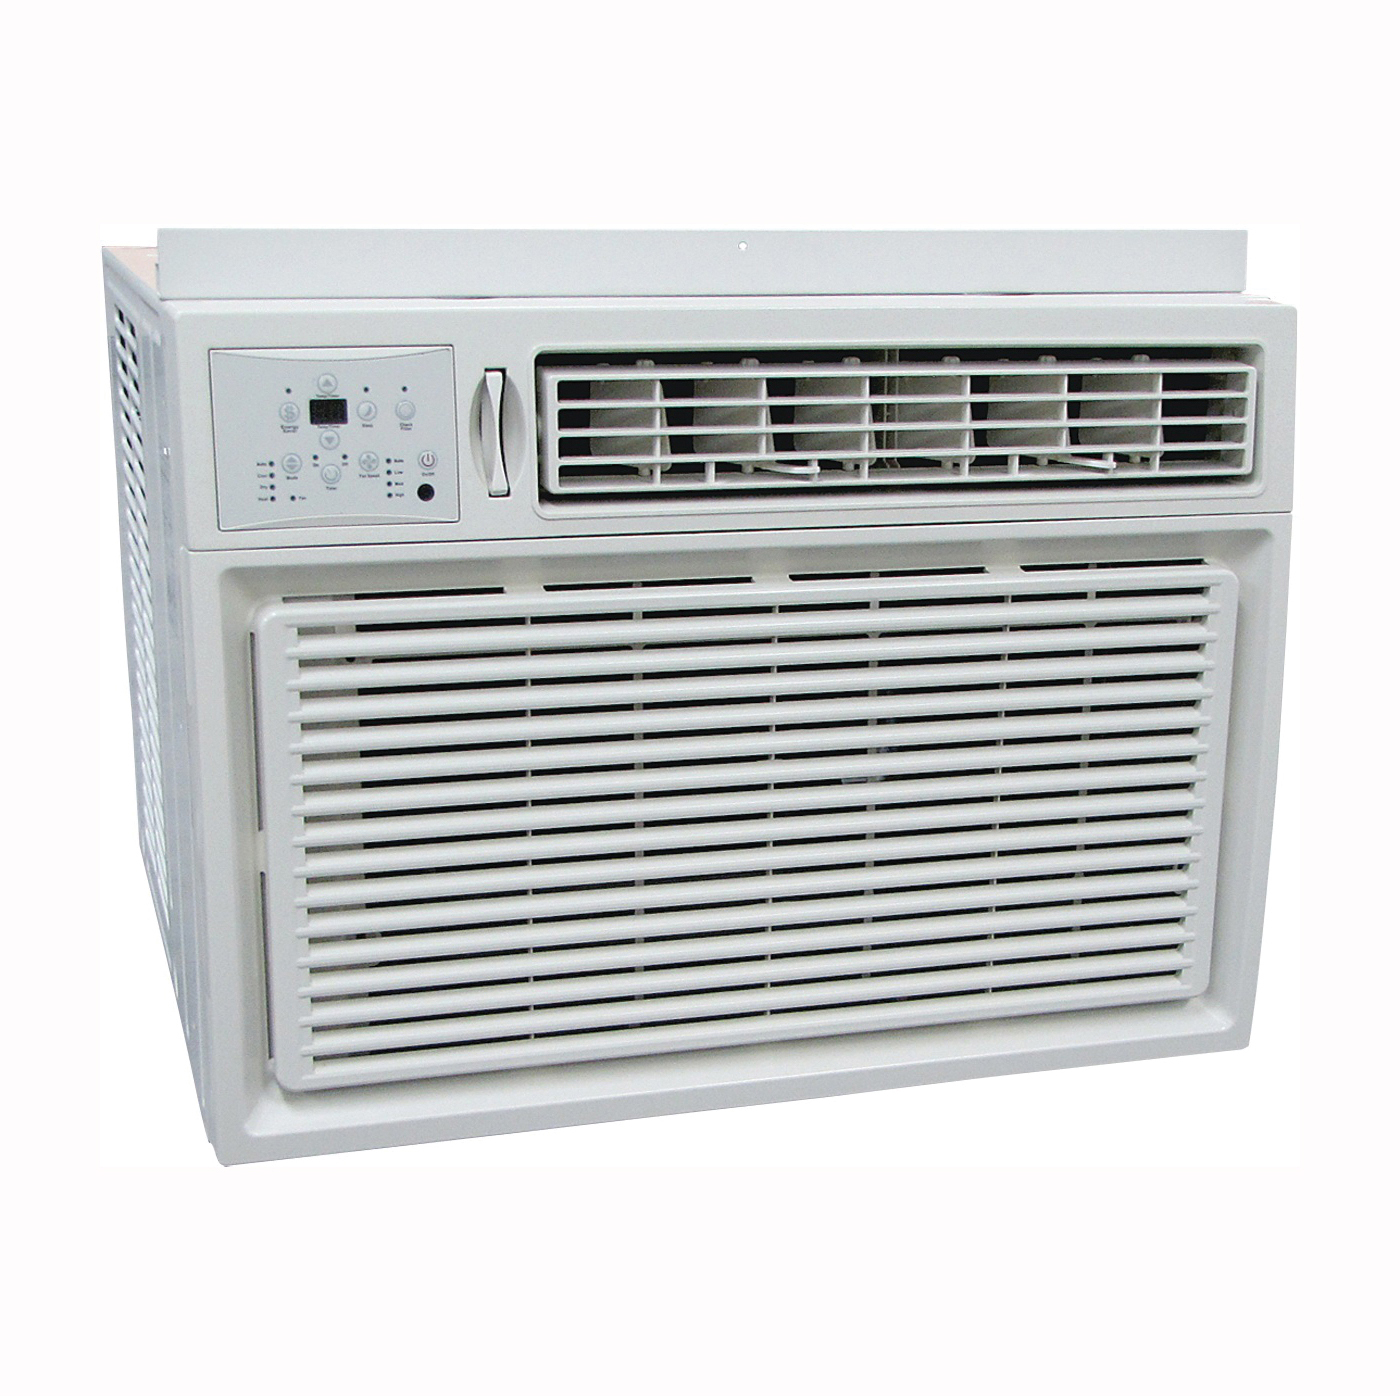 REG-81M Room Air Conditioner, 115 V, 60 Hz, 8000 Btu/hr Cooling, 10.9 EER, 58/55/52 dB